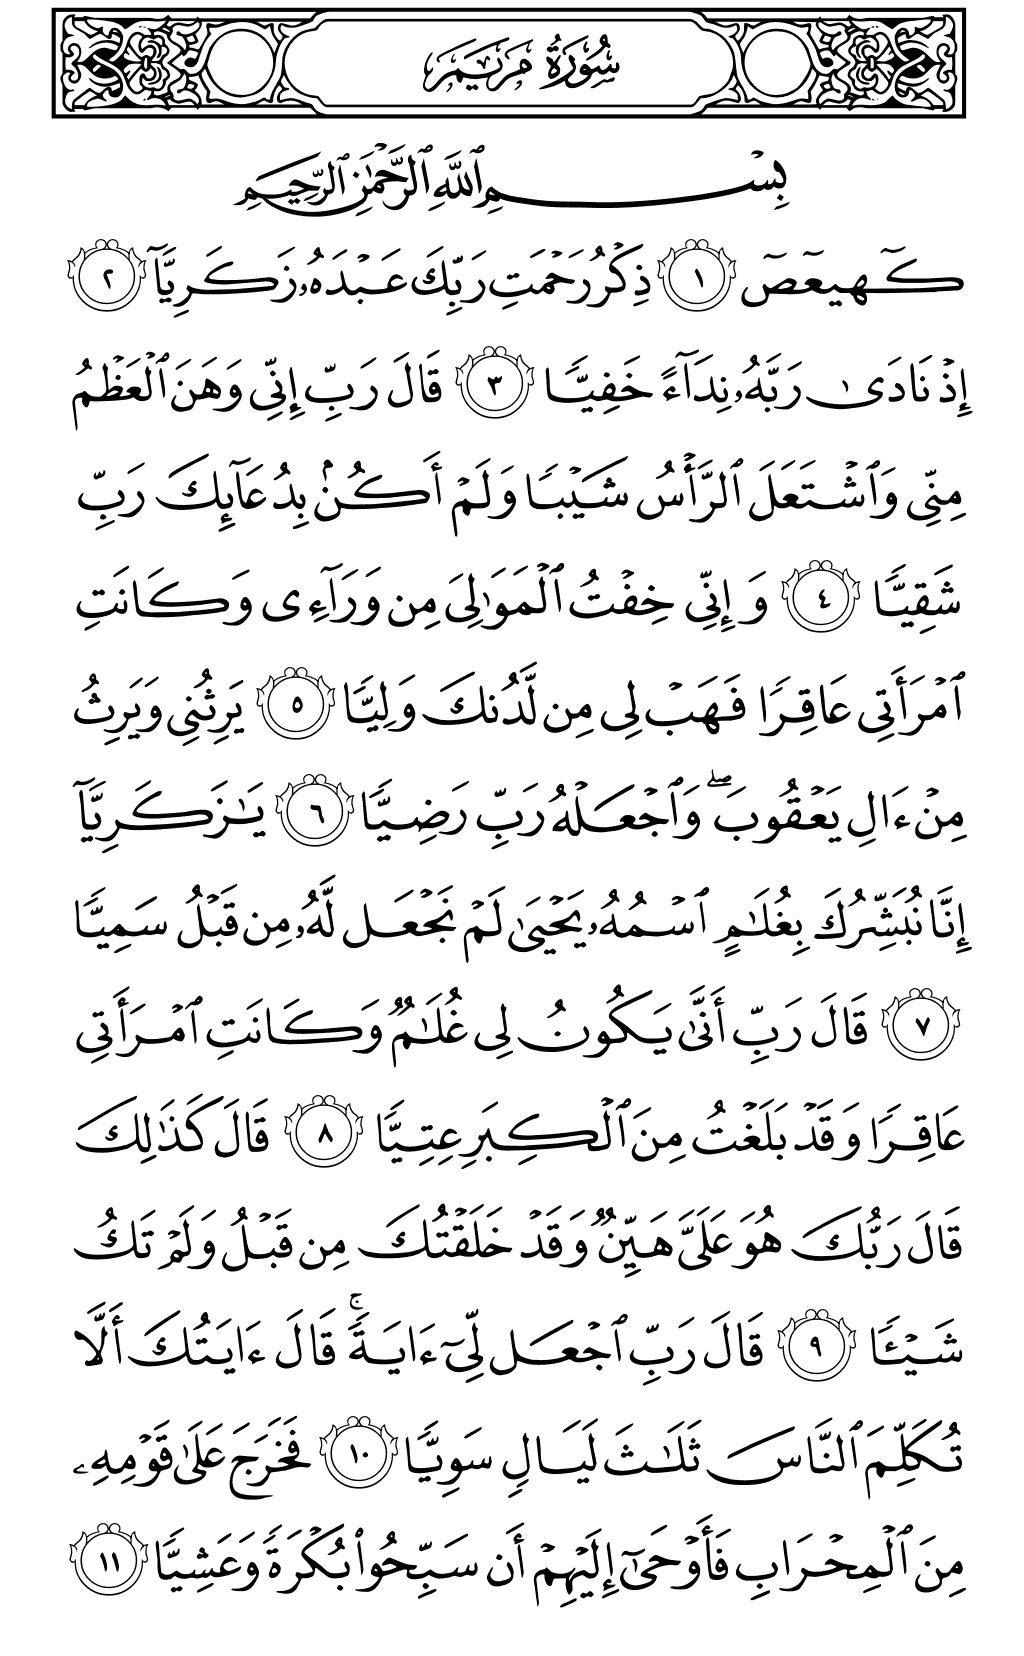 الصفحة رقم 305 من القرآن الكريم